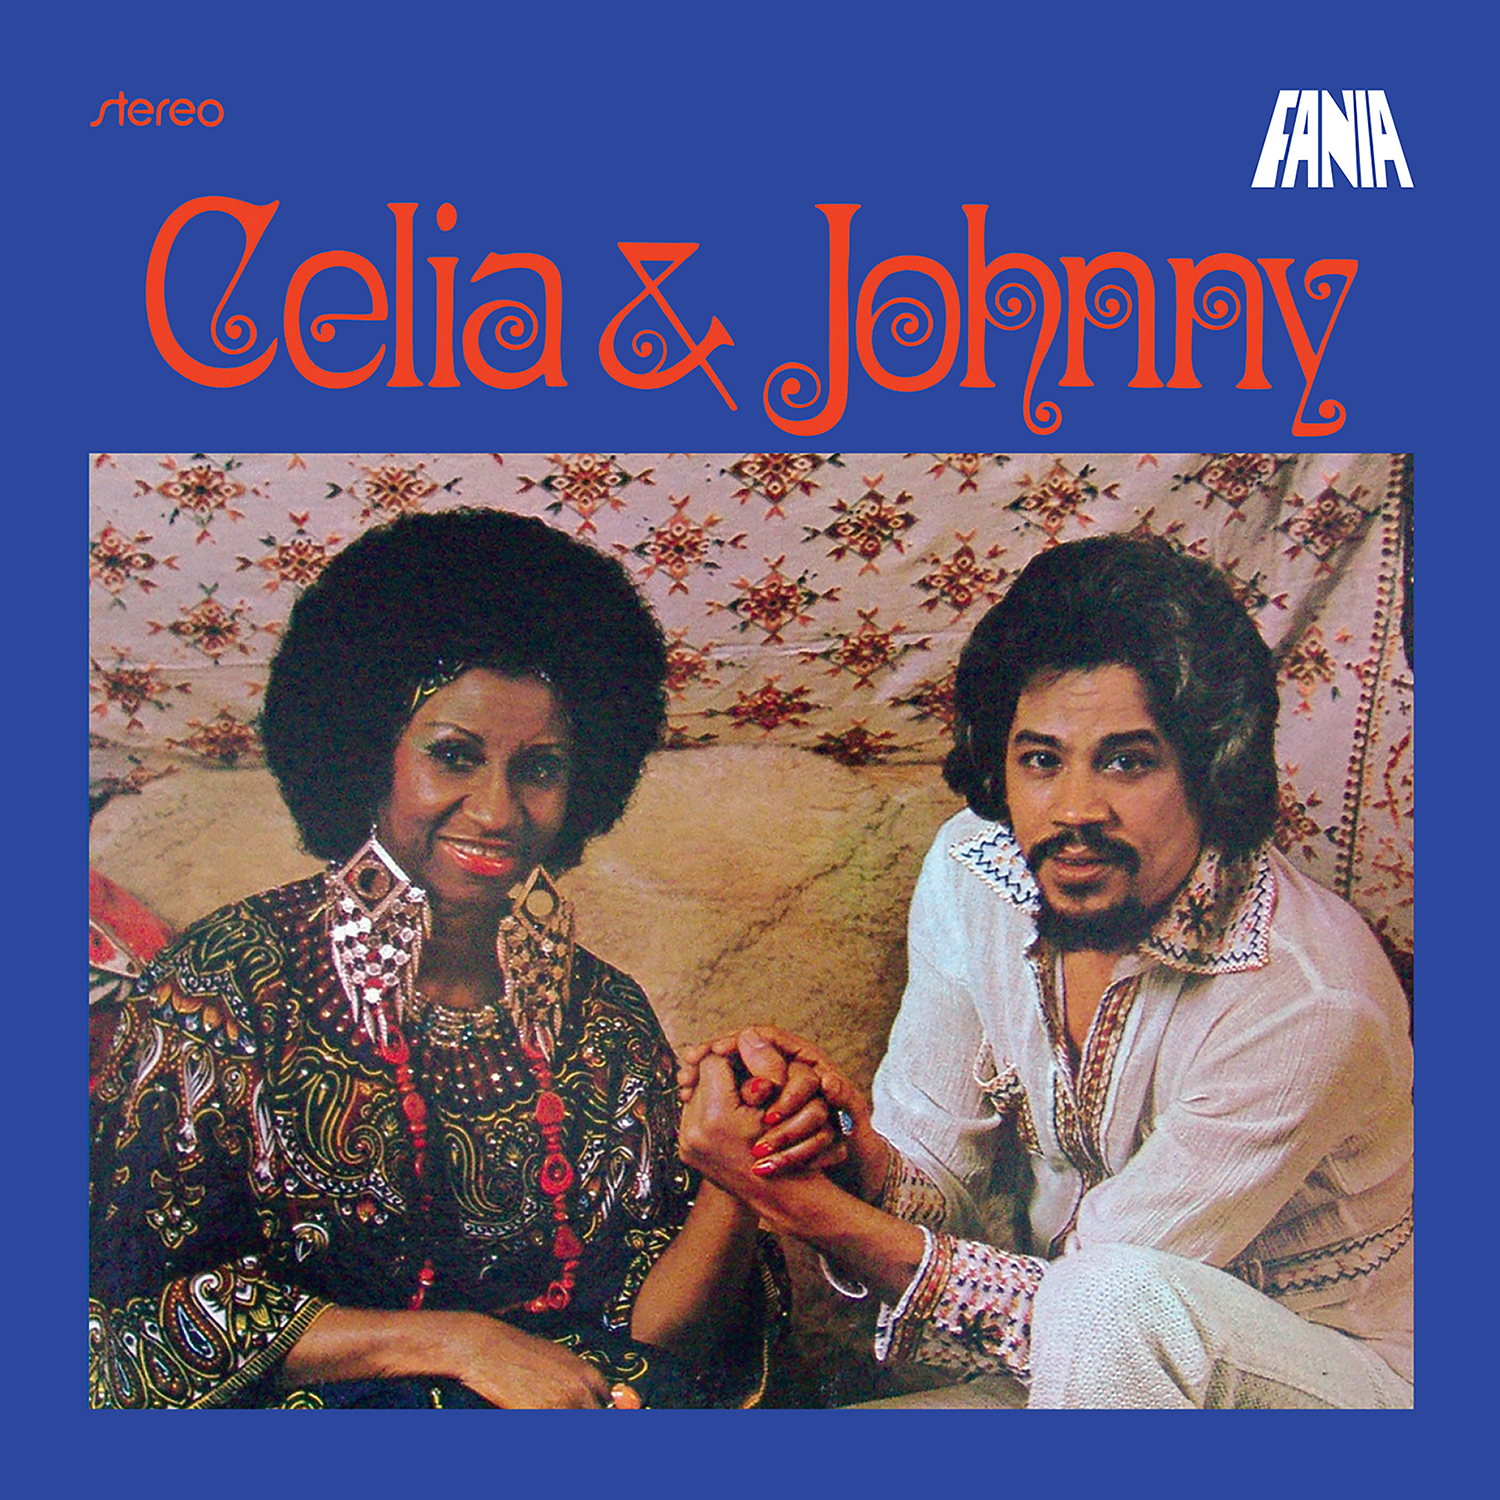 Portada del álbum Celia & Johnny